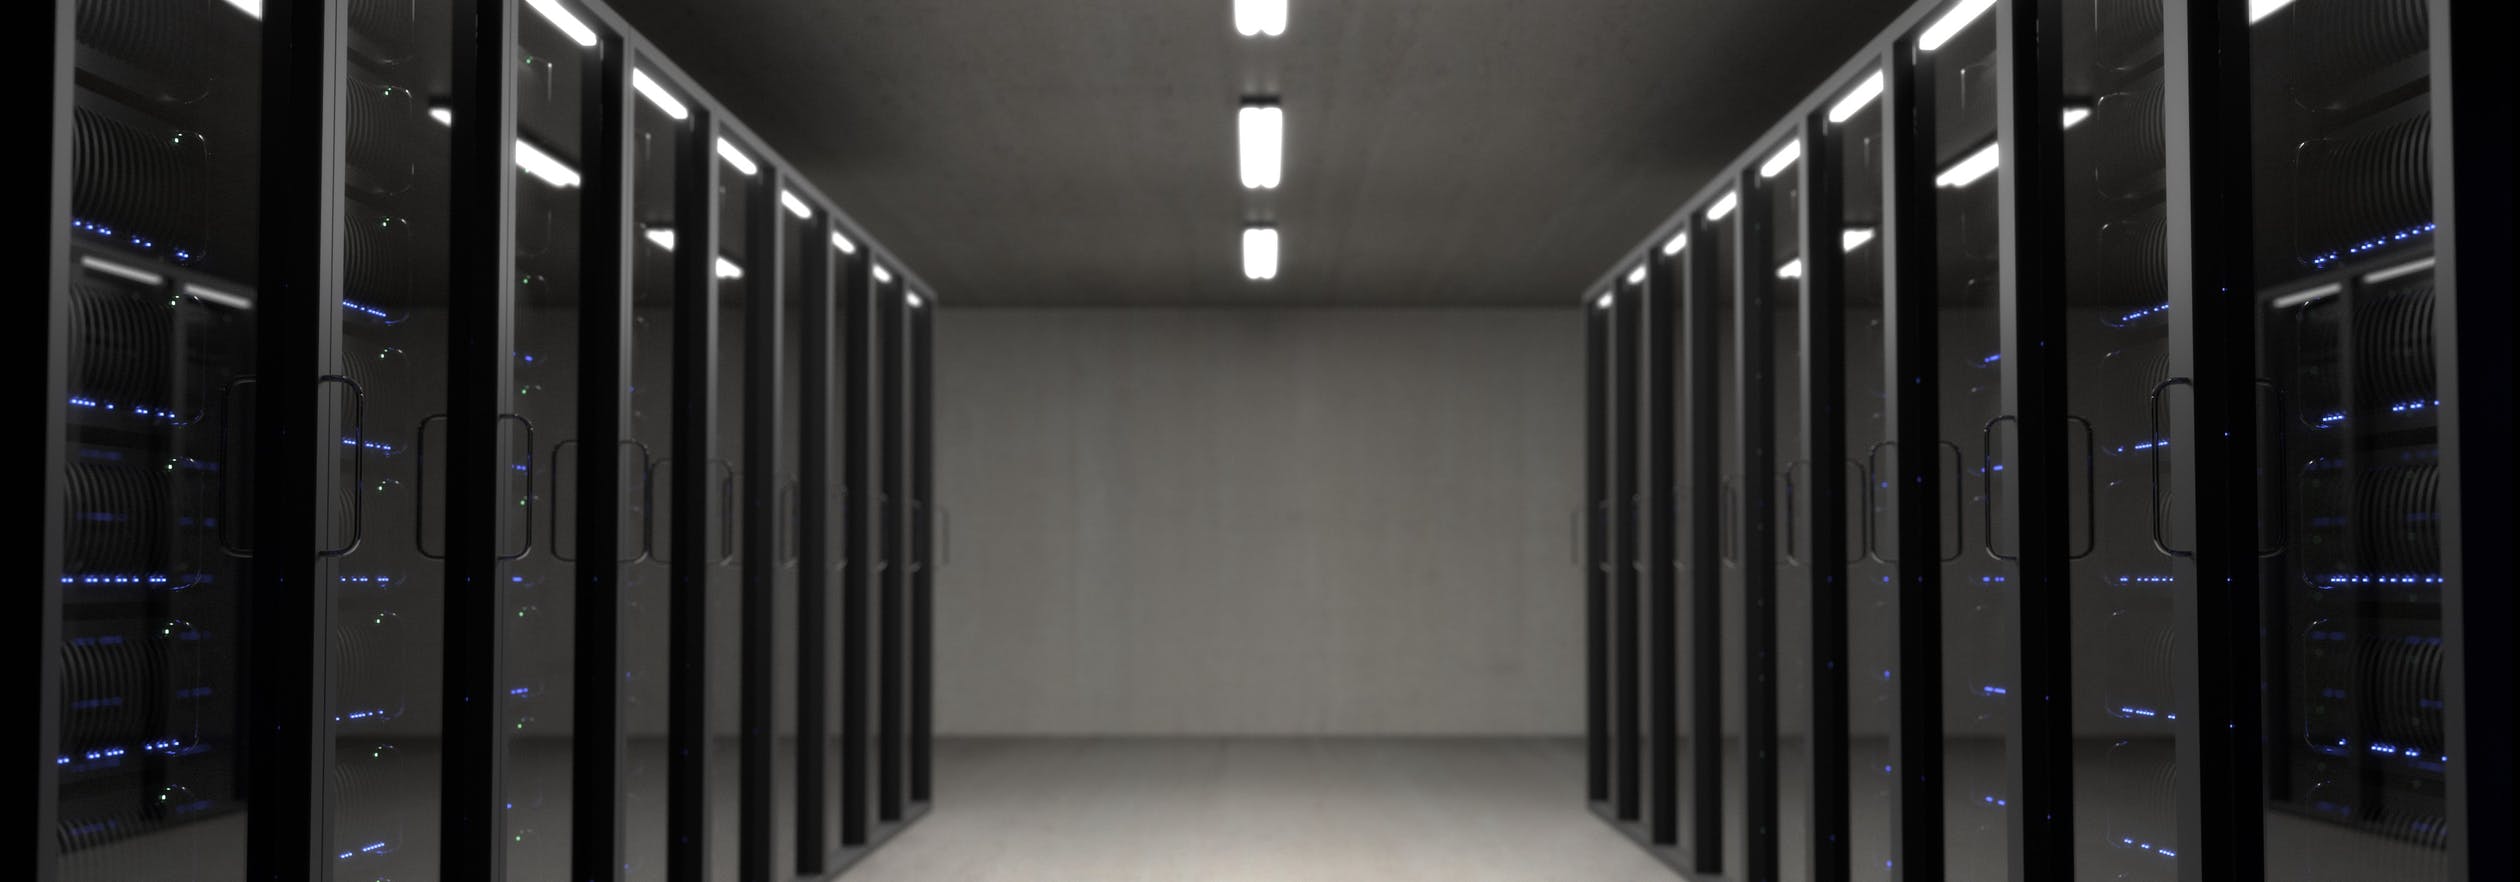 Es ist ein Serverraum zu sehen, welcher dunkel gehalten ist und viele Server beinhaltet.